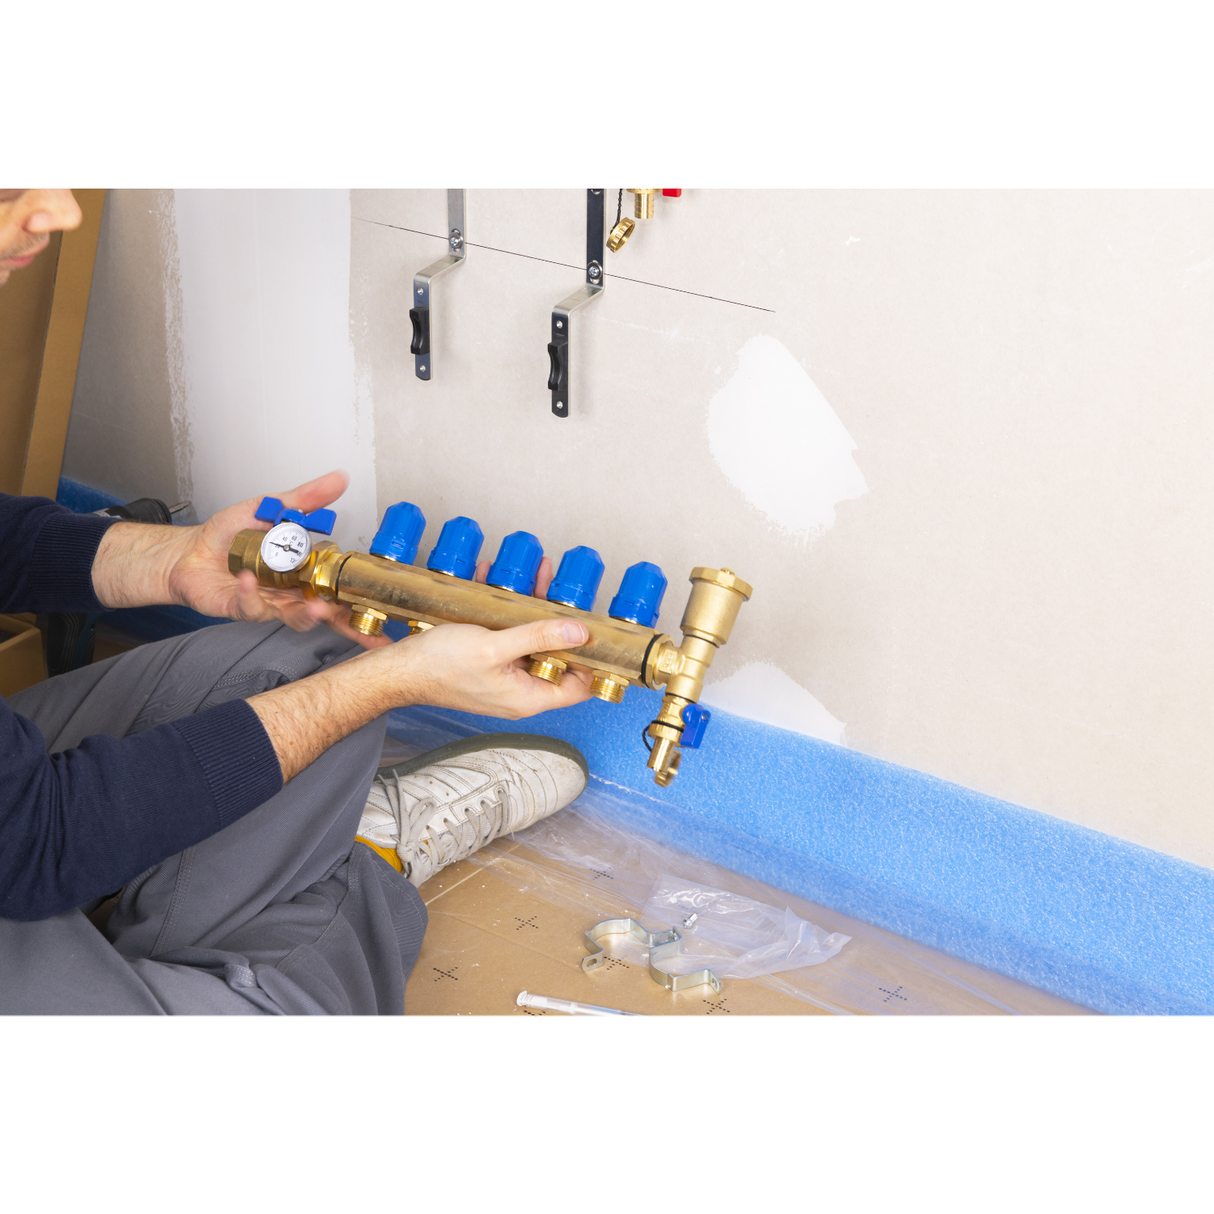 Installation vanne droite manette bleue collecteur plancher chauffant